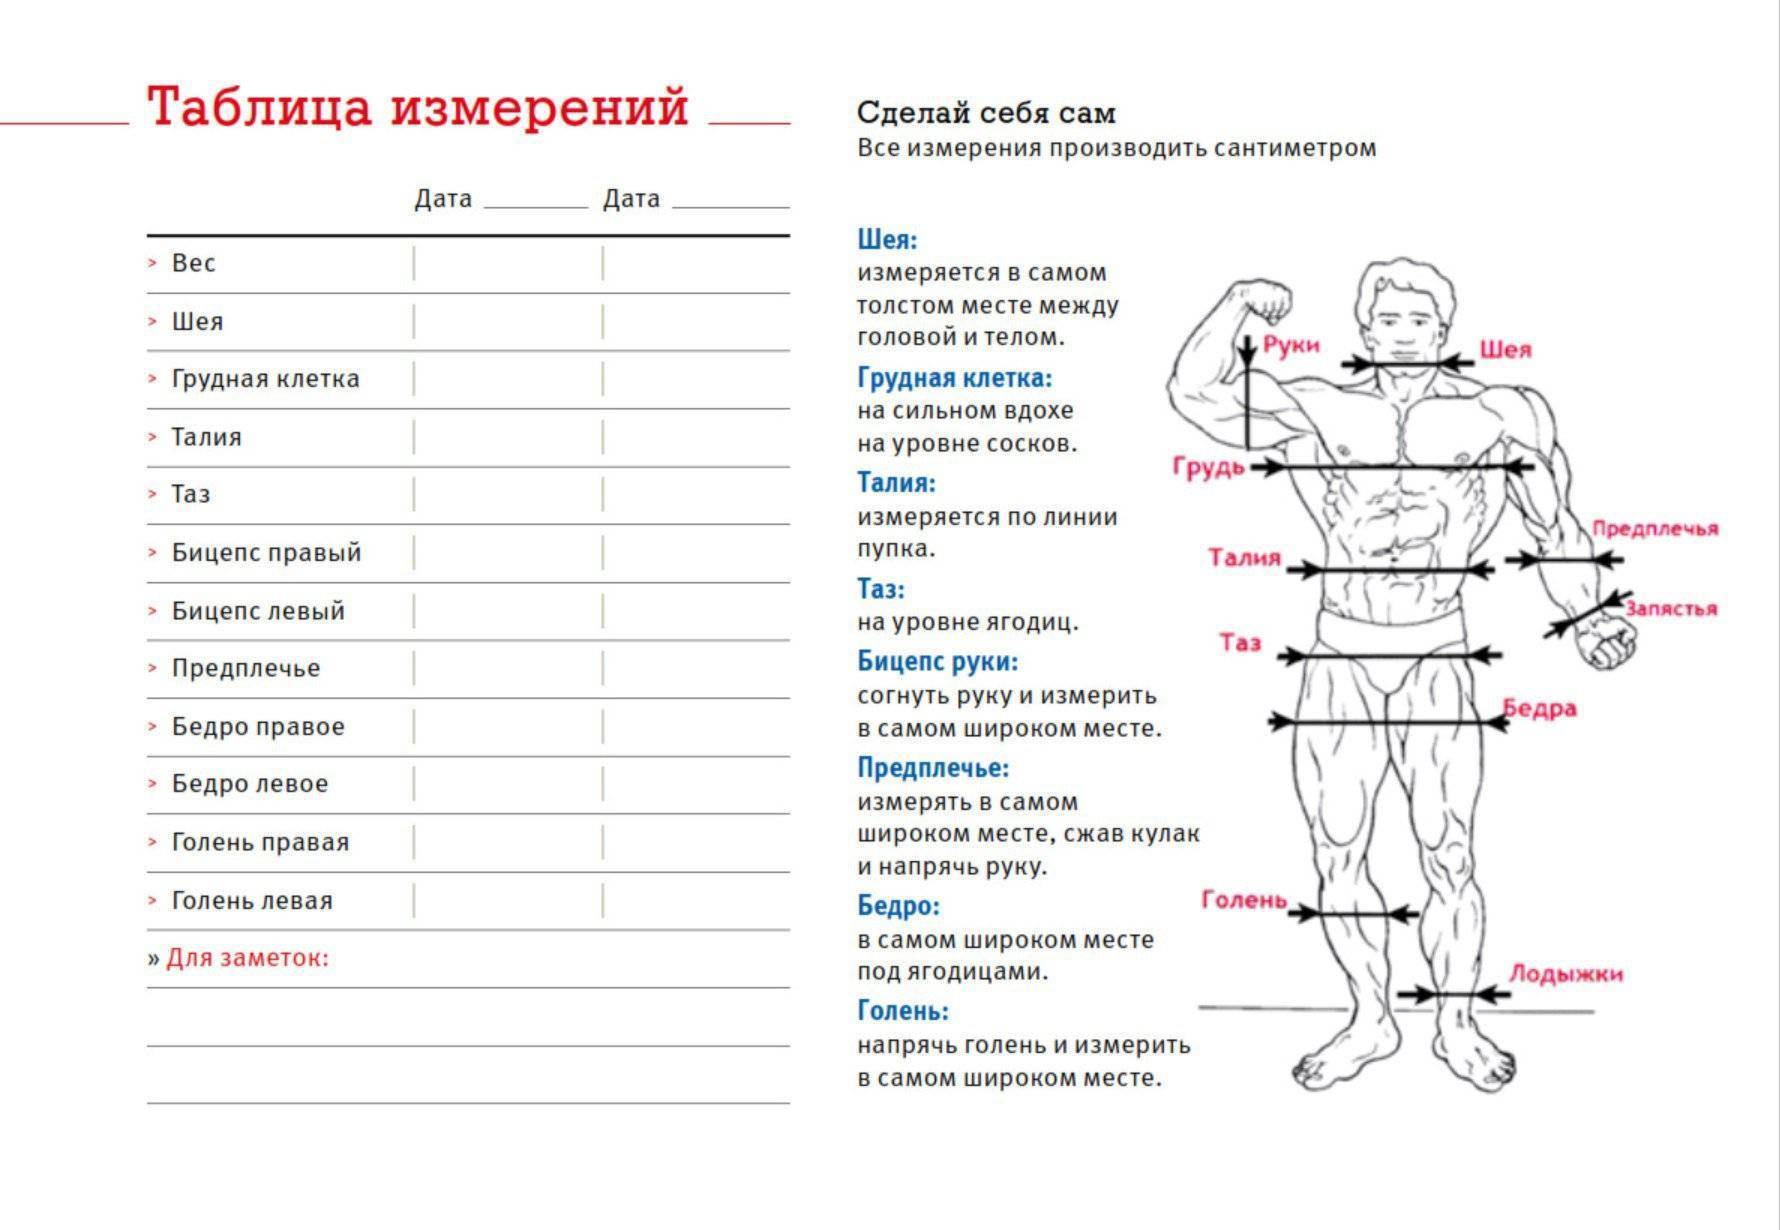 Идеальные пропорции тела мужчины - таблица!